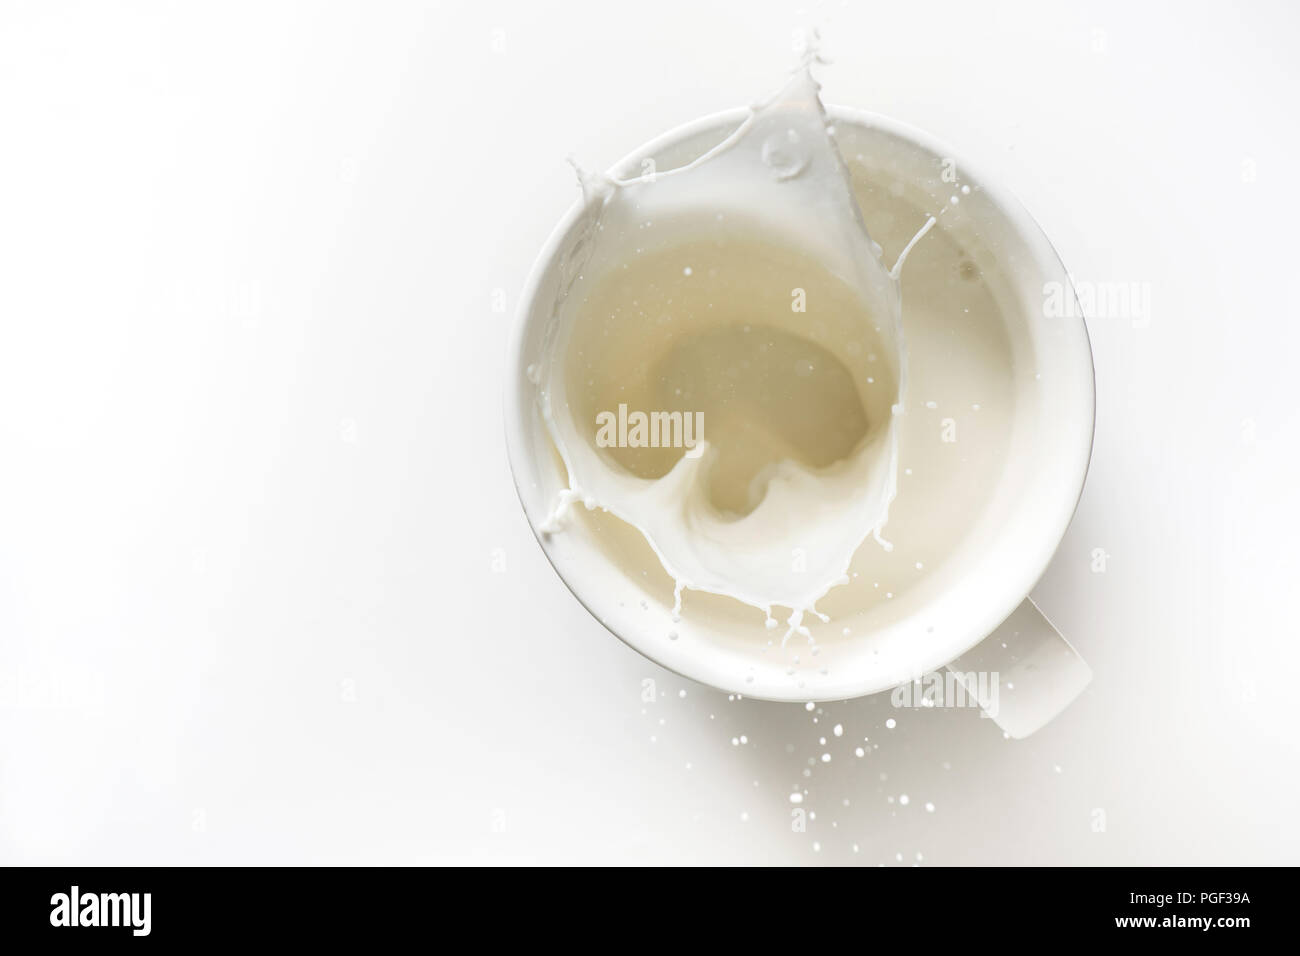 Vue de dessus de splash de lait en verre isolé sur fond blanc Banque D'Images